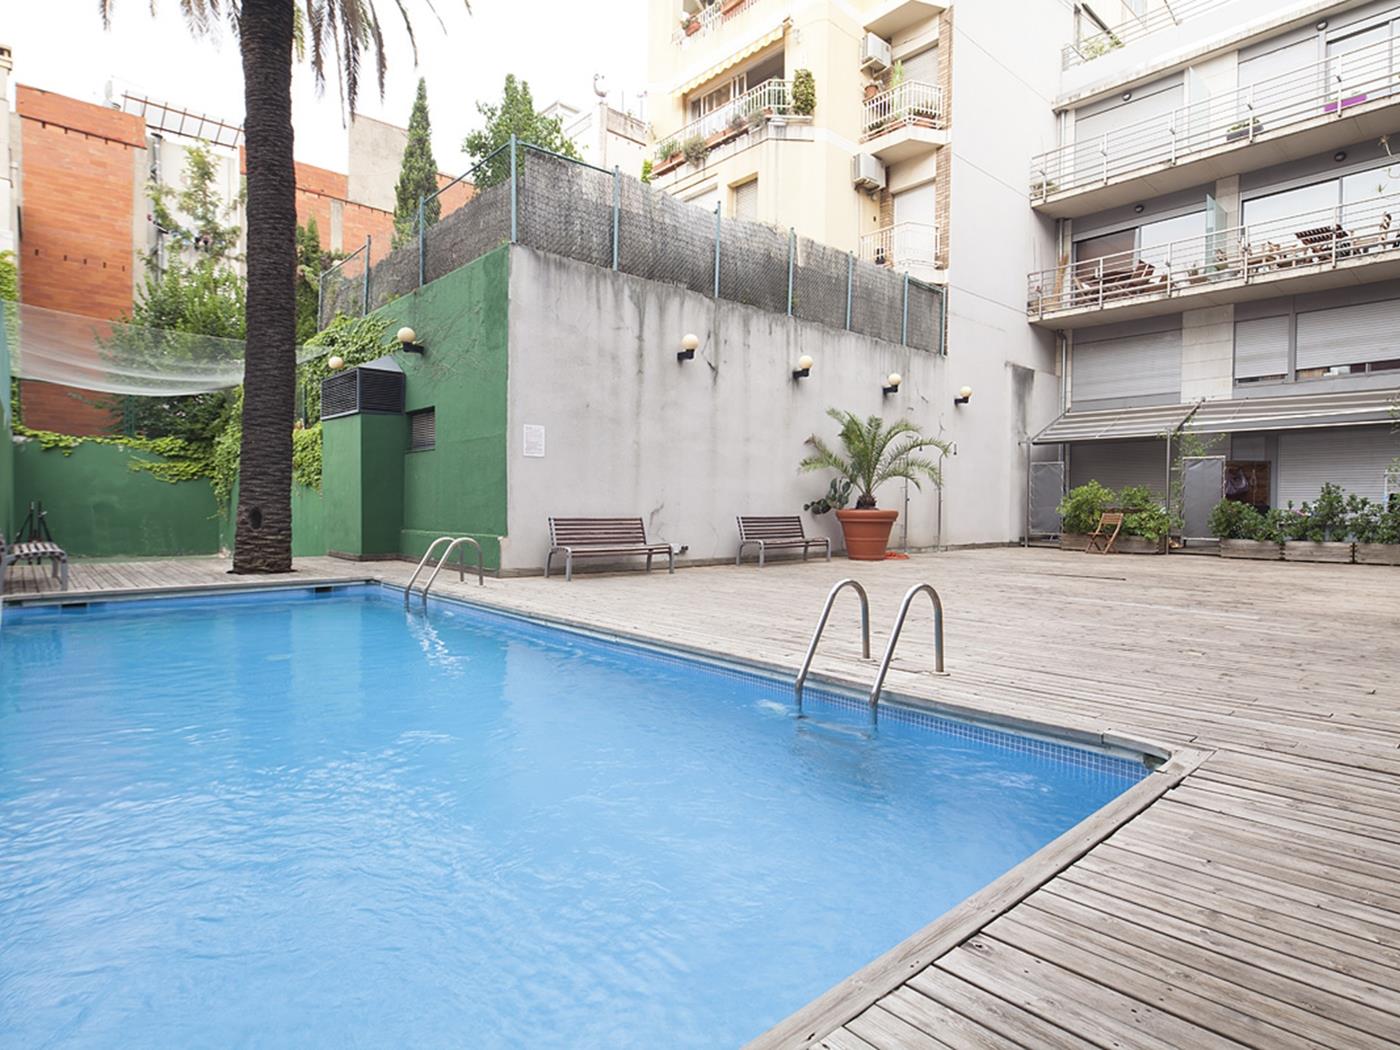 Maisonette Wohnung mit Schwimmbad in Barcelona - My Space Barcelona Appartementen